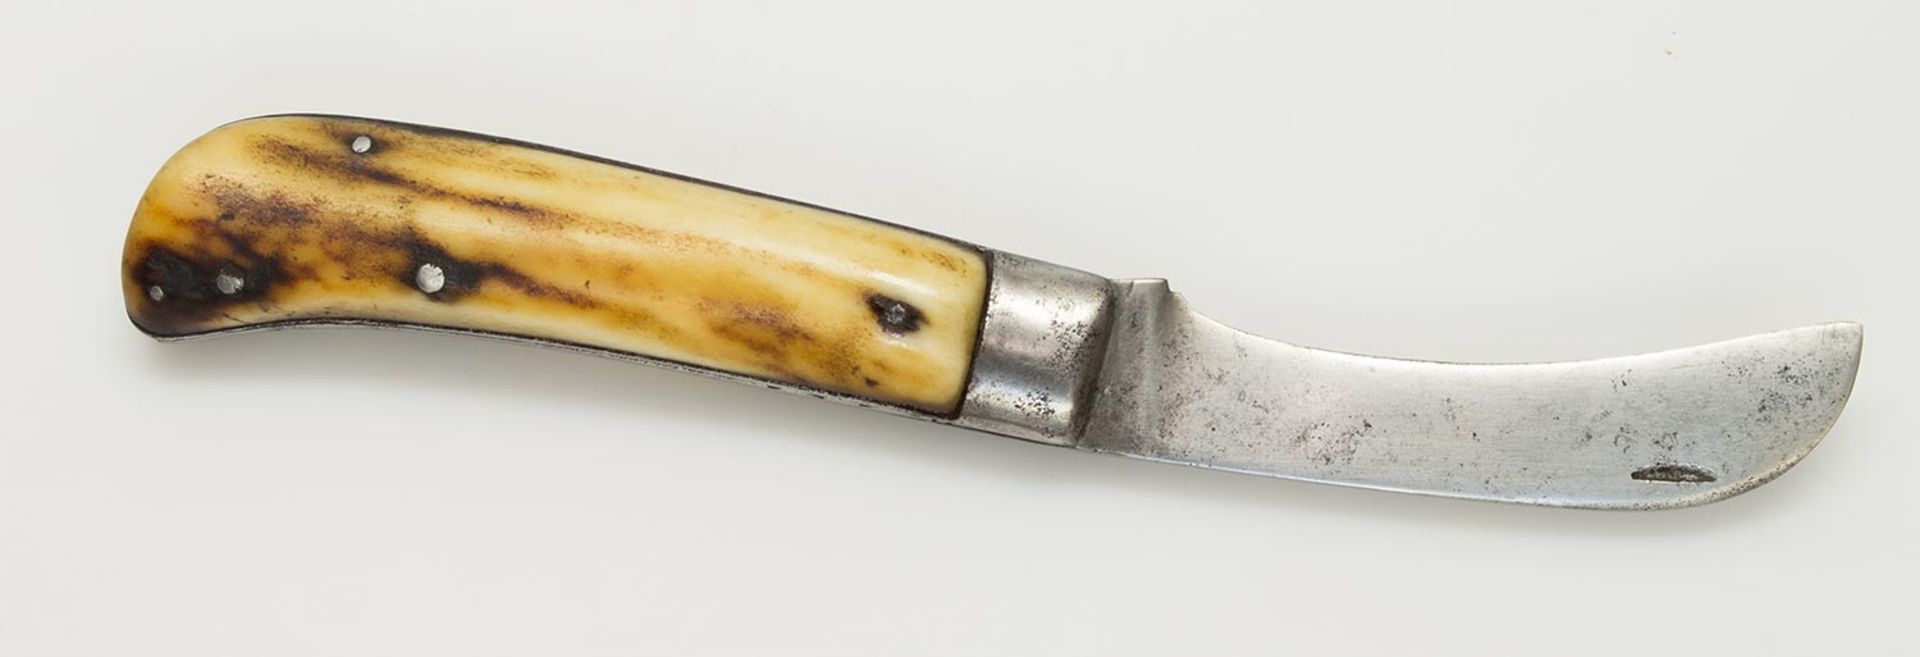 Jagd-KlappmesserFrankreich um 1900, Horngriffschalen, Rücken mit gefeilter Verzierung, L. 11,5 cm